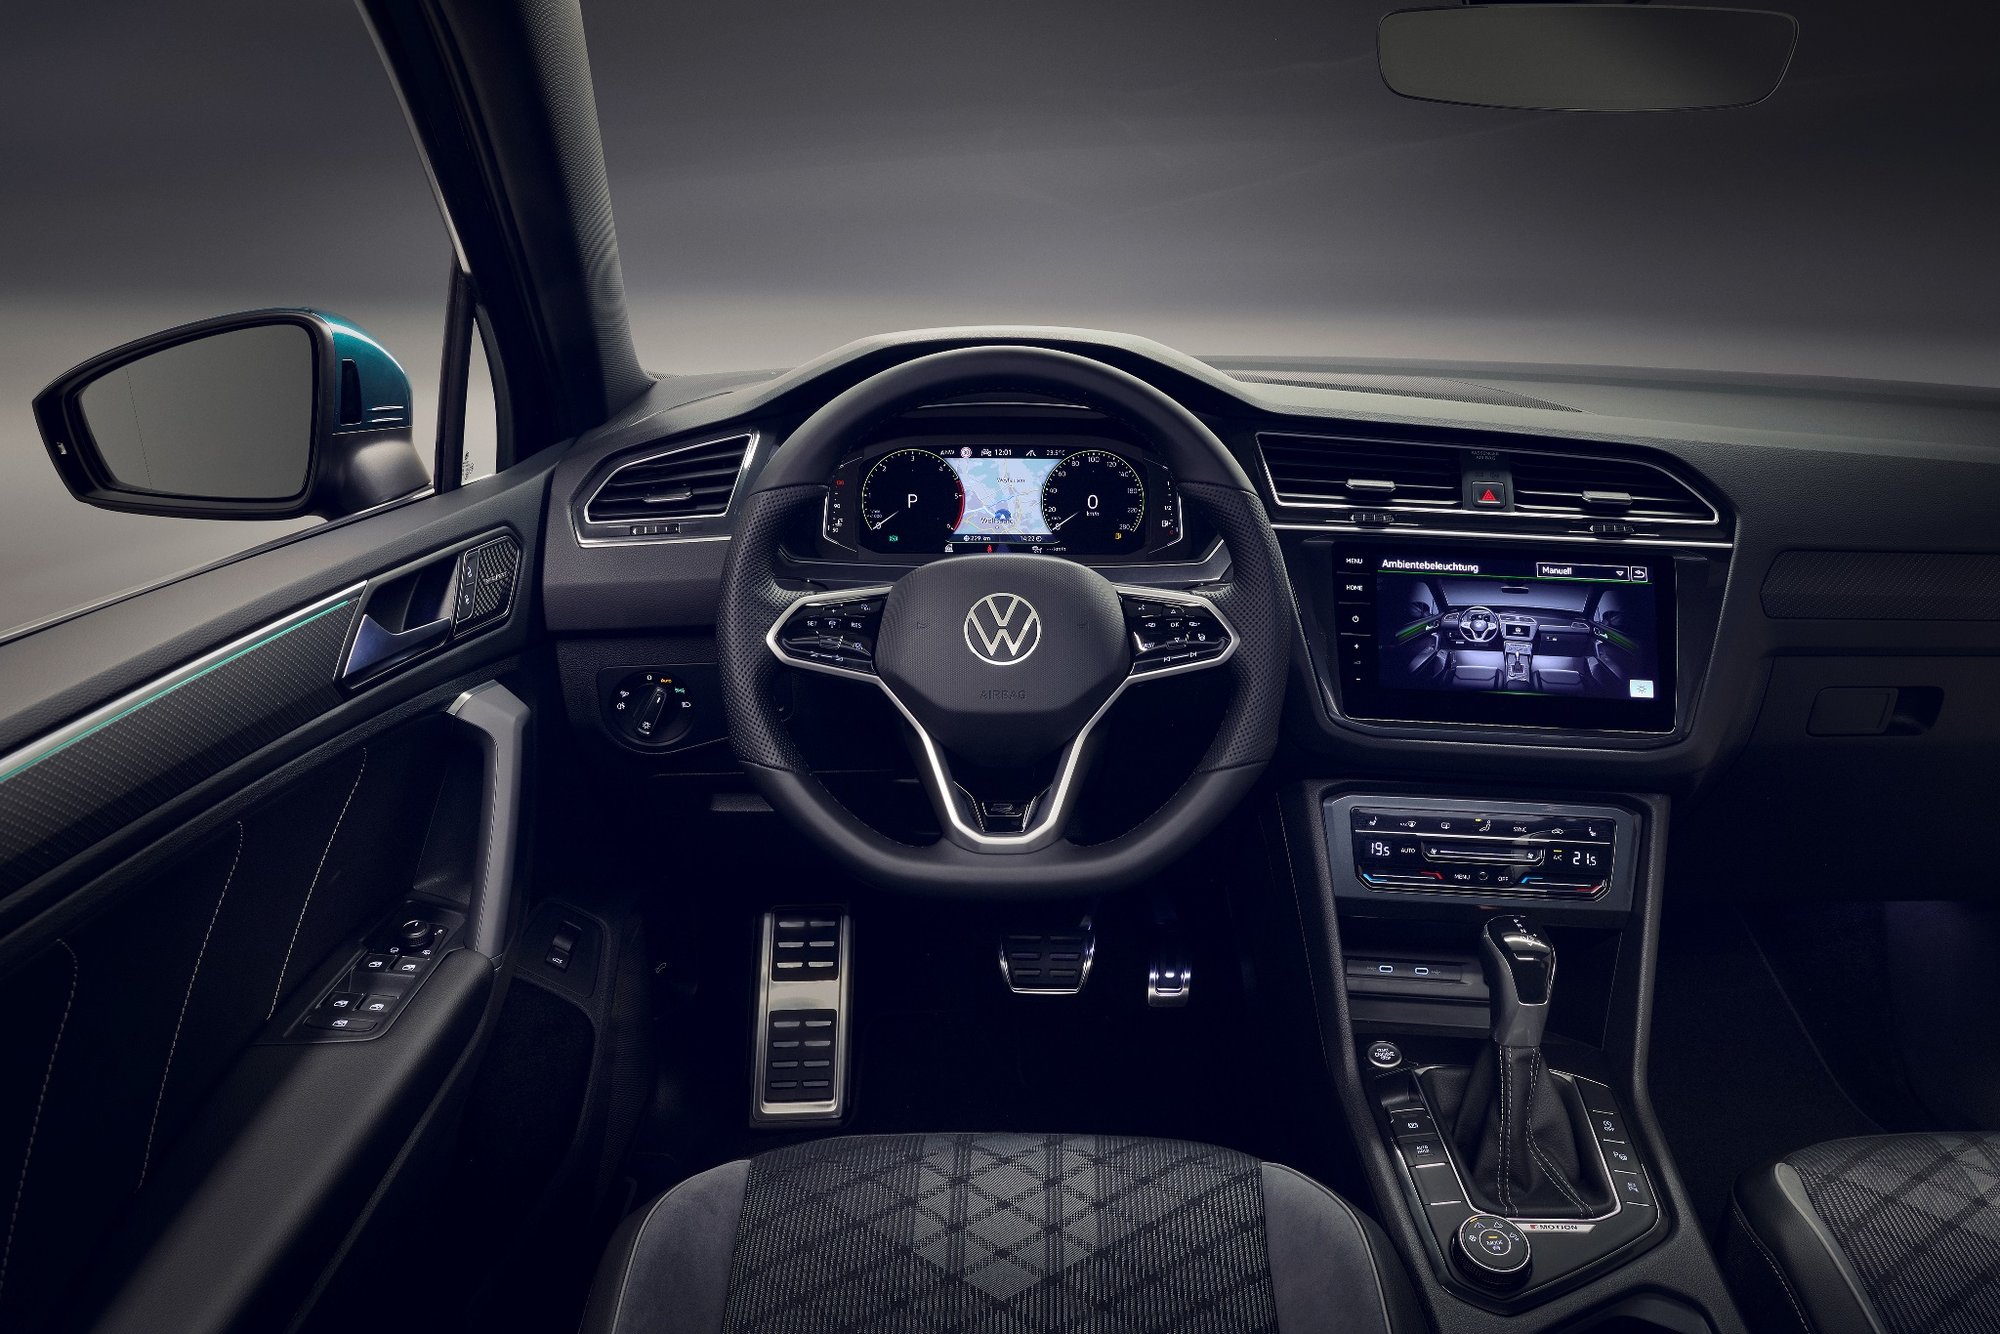 VW Tiguan prošel faceliftem. Do vínku dostal více elektřiny, výkonu, zábavy a osobitosti